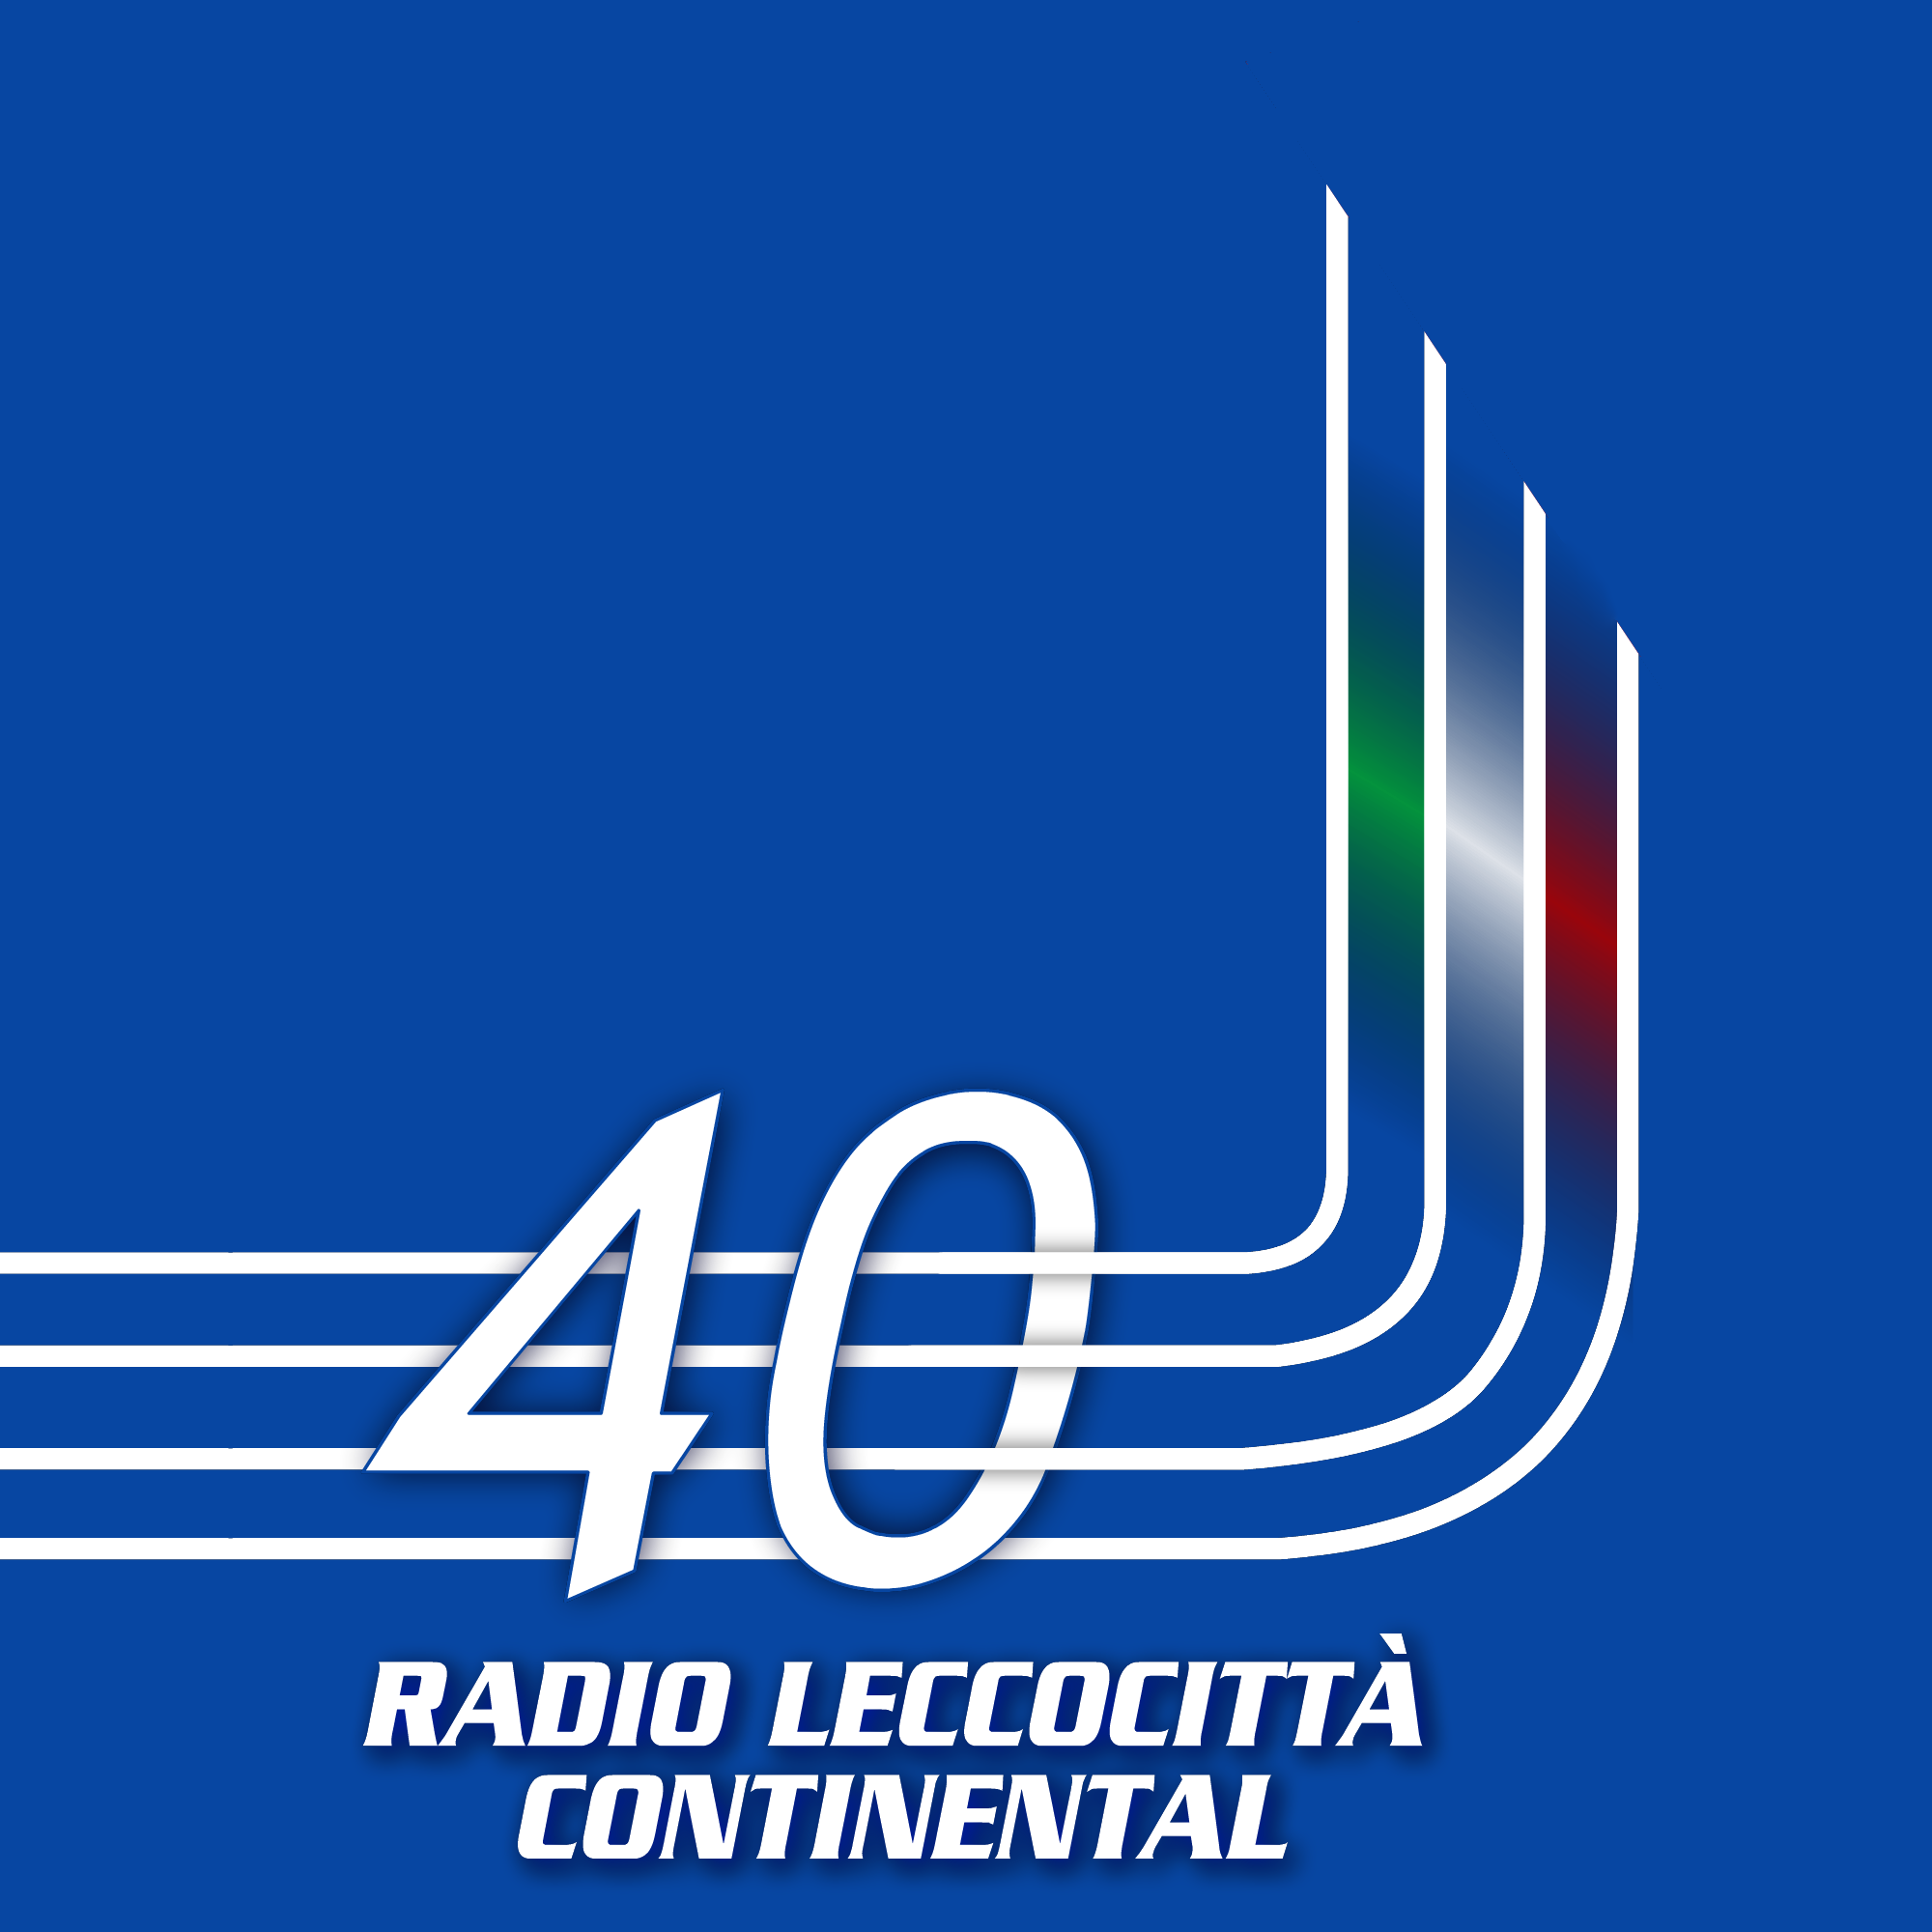 Radio Leccocittà Continental nuevo logo por 40 años